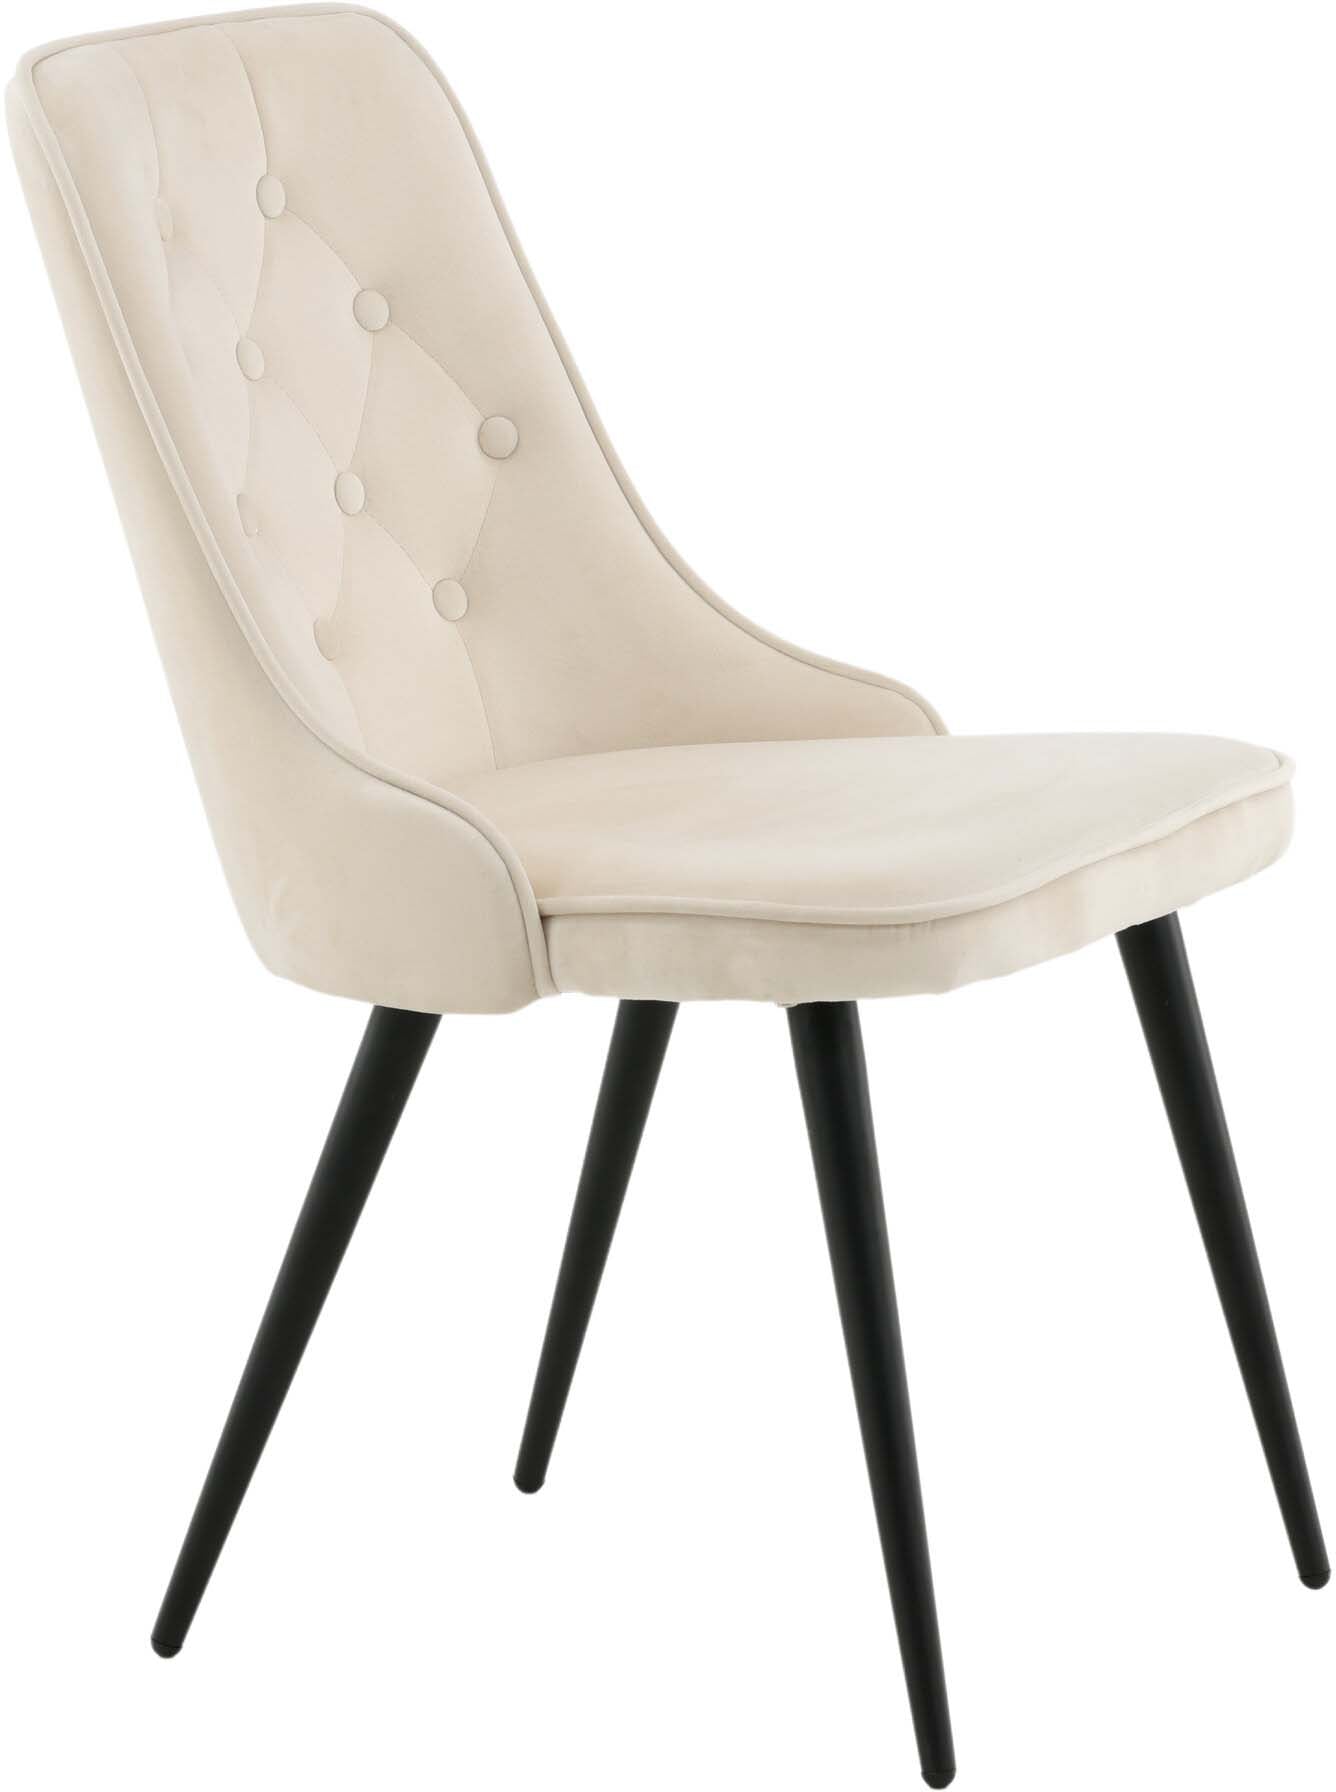 Velvet Deluxe Stuhl in Beige / Schwarz präsentiert im Onlineshop von KAQTU Design AG. Stuhl ist von Venture Home